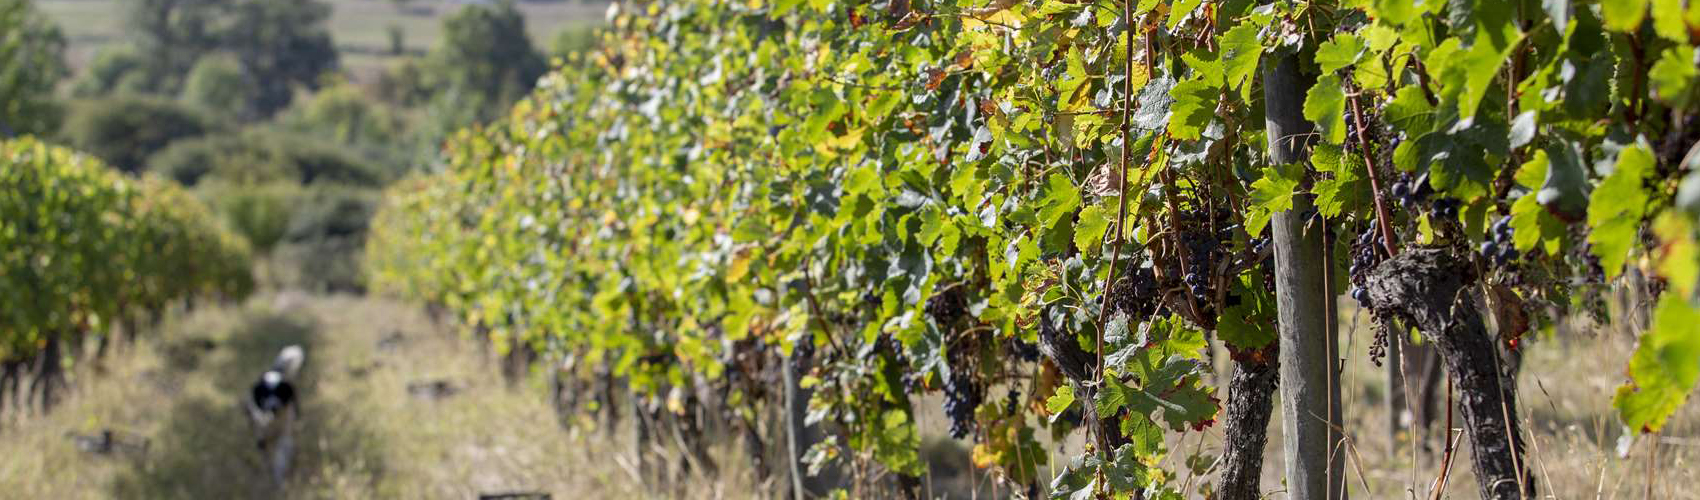 vins nature vigne